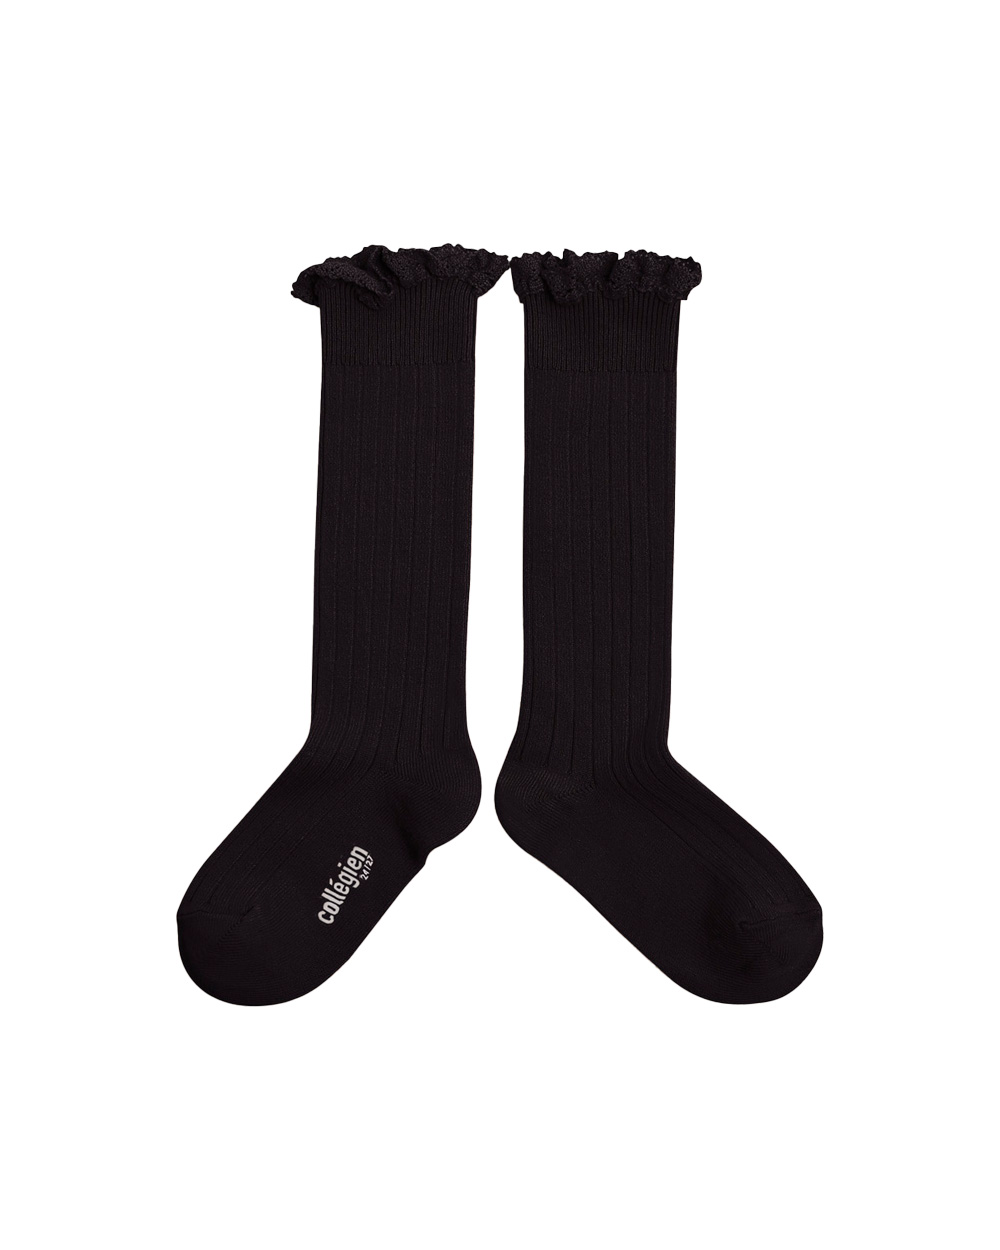 [Collégien] Joséphine - Lace-Trim Ribbed Knee-high Socks - Noir de Charbon [28/31]